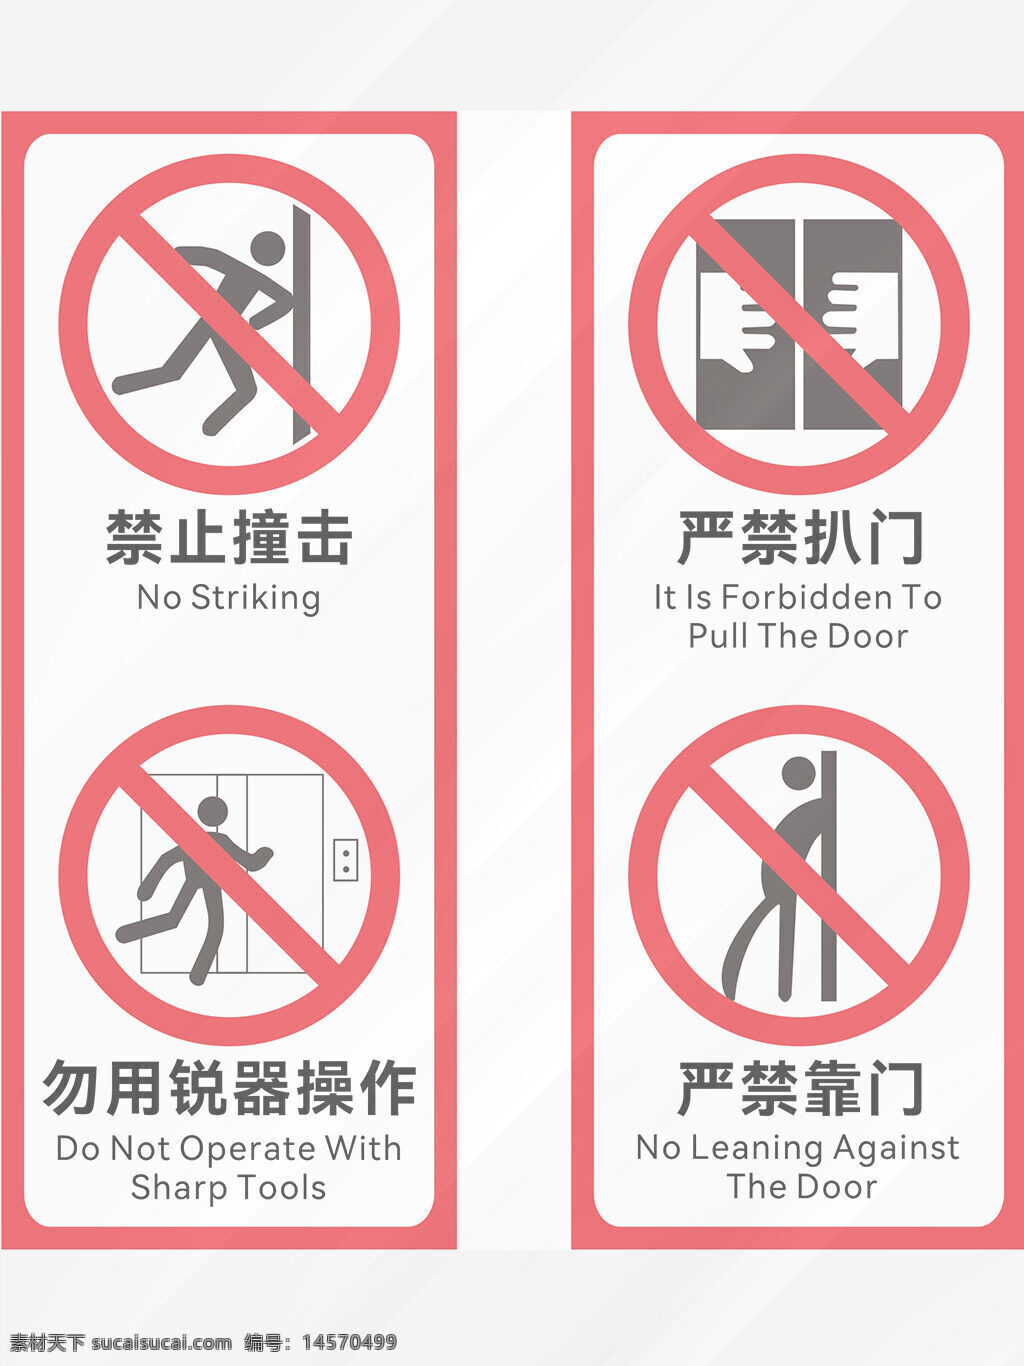 电梯安全 电梯 电梯广告 注意事项 安全 电梯标识 电梯门 电梯海报